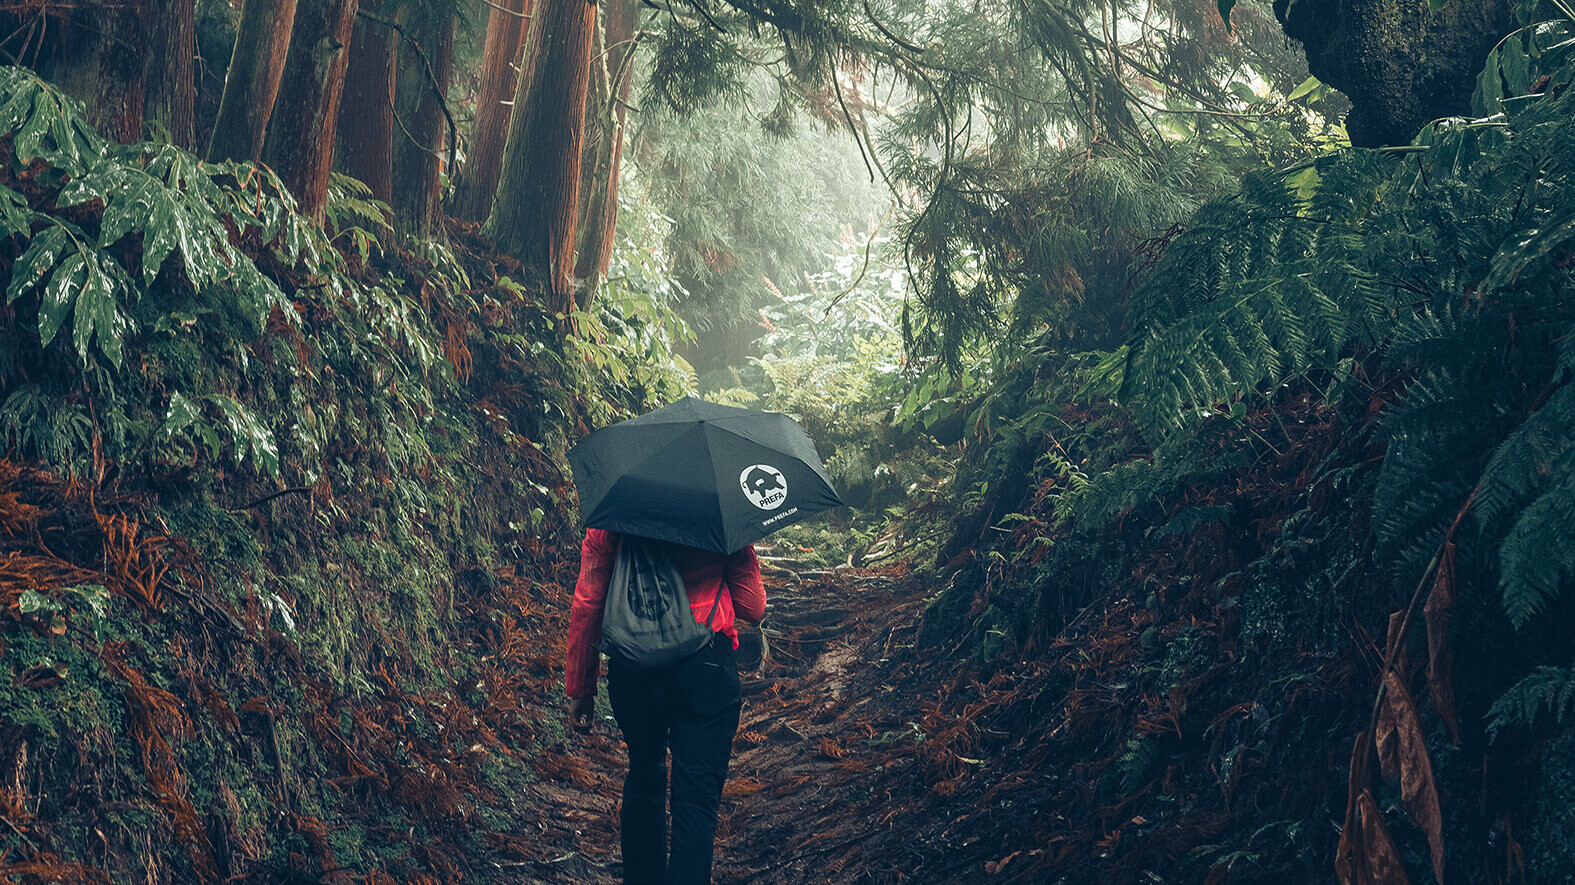 Billede fra skov med kvindelig vandrer i rød jakke med PREFA-paraply og -sportstaske, symboliserer PREFA-miljøbeskyttelse og -bæredygtighed samt kredsløbsøkonomi og genanvendelse.